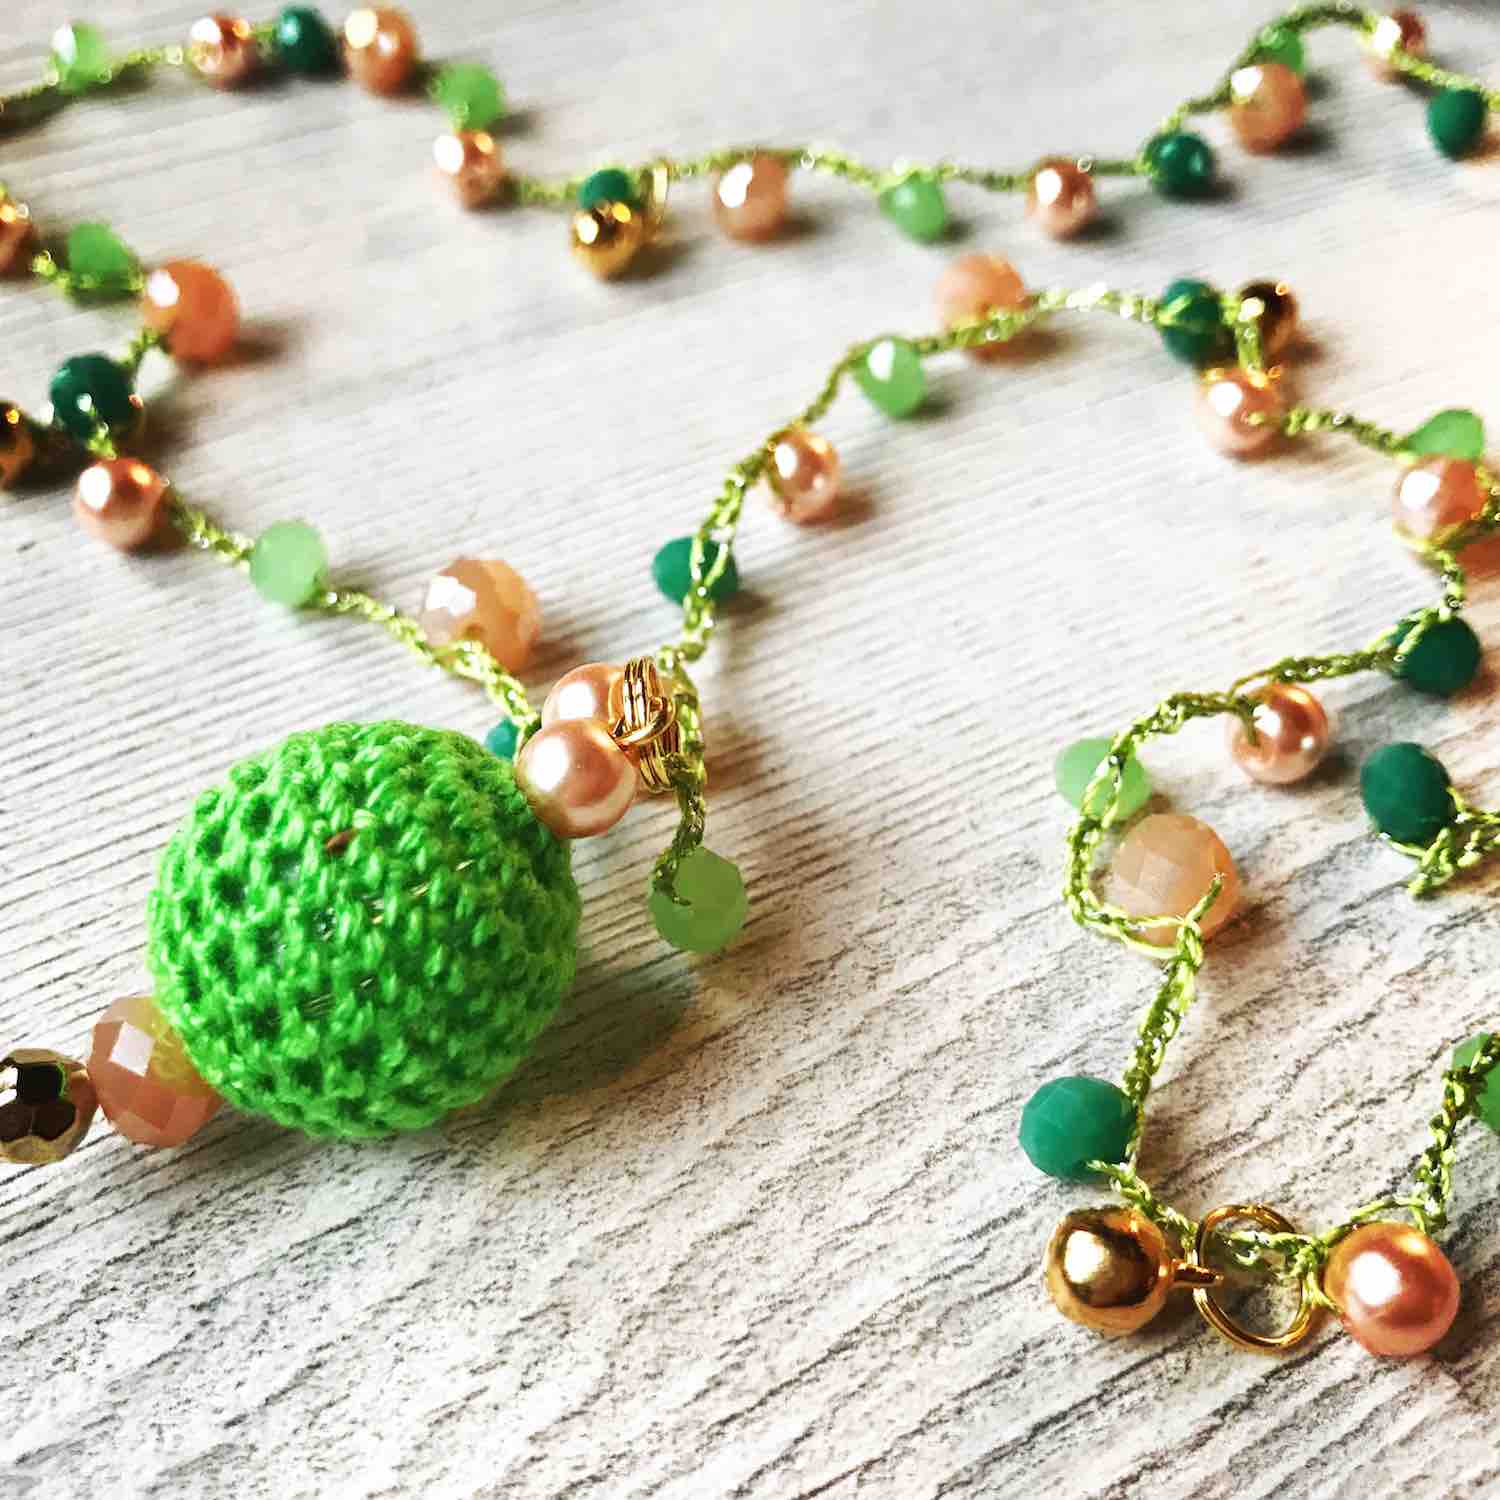 Il Chicchirillò di Valentina, accessori e gioielli handmade 100% made in Tuscany. Le collezioni di collane di perline e collane all'uncinetto de Il Chicchirillò sono pensate per donne che amano divertirsi.